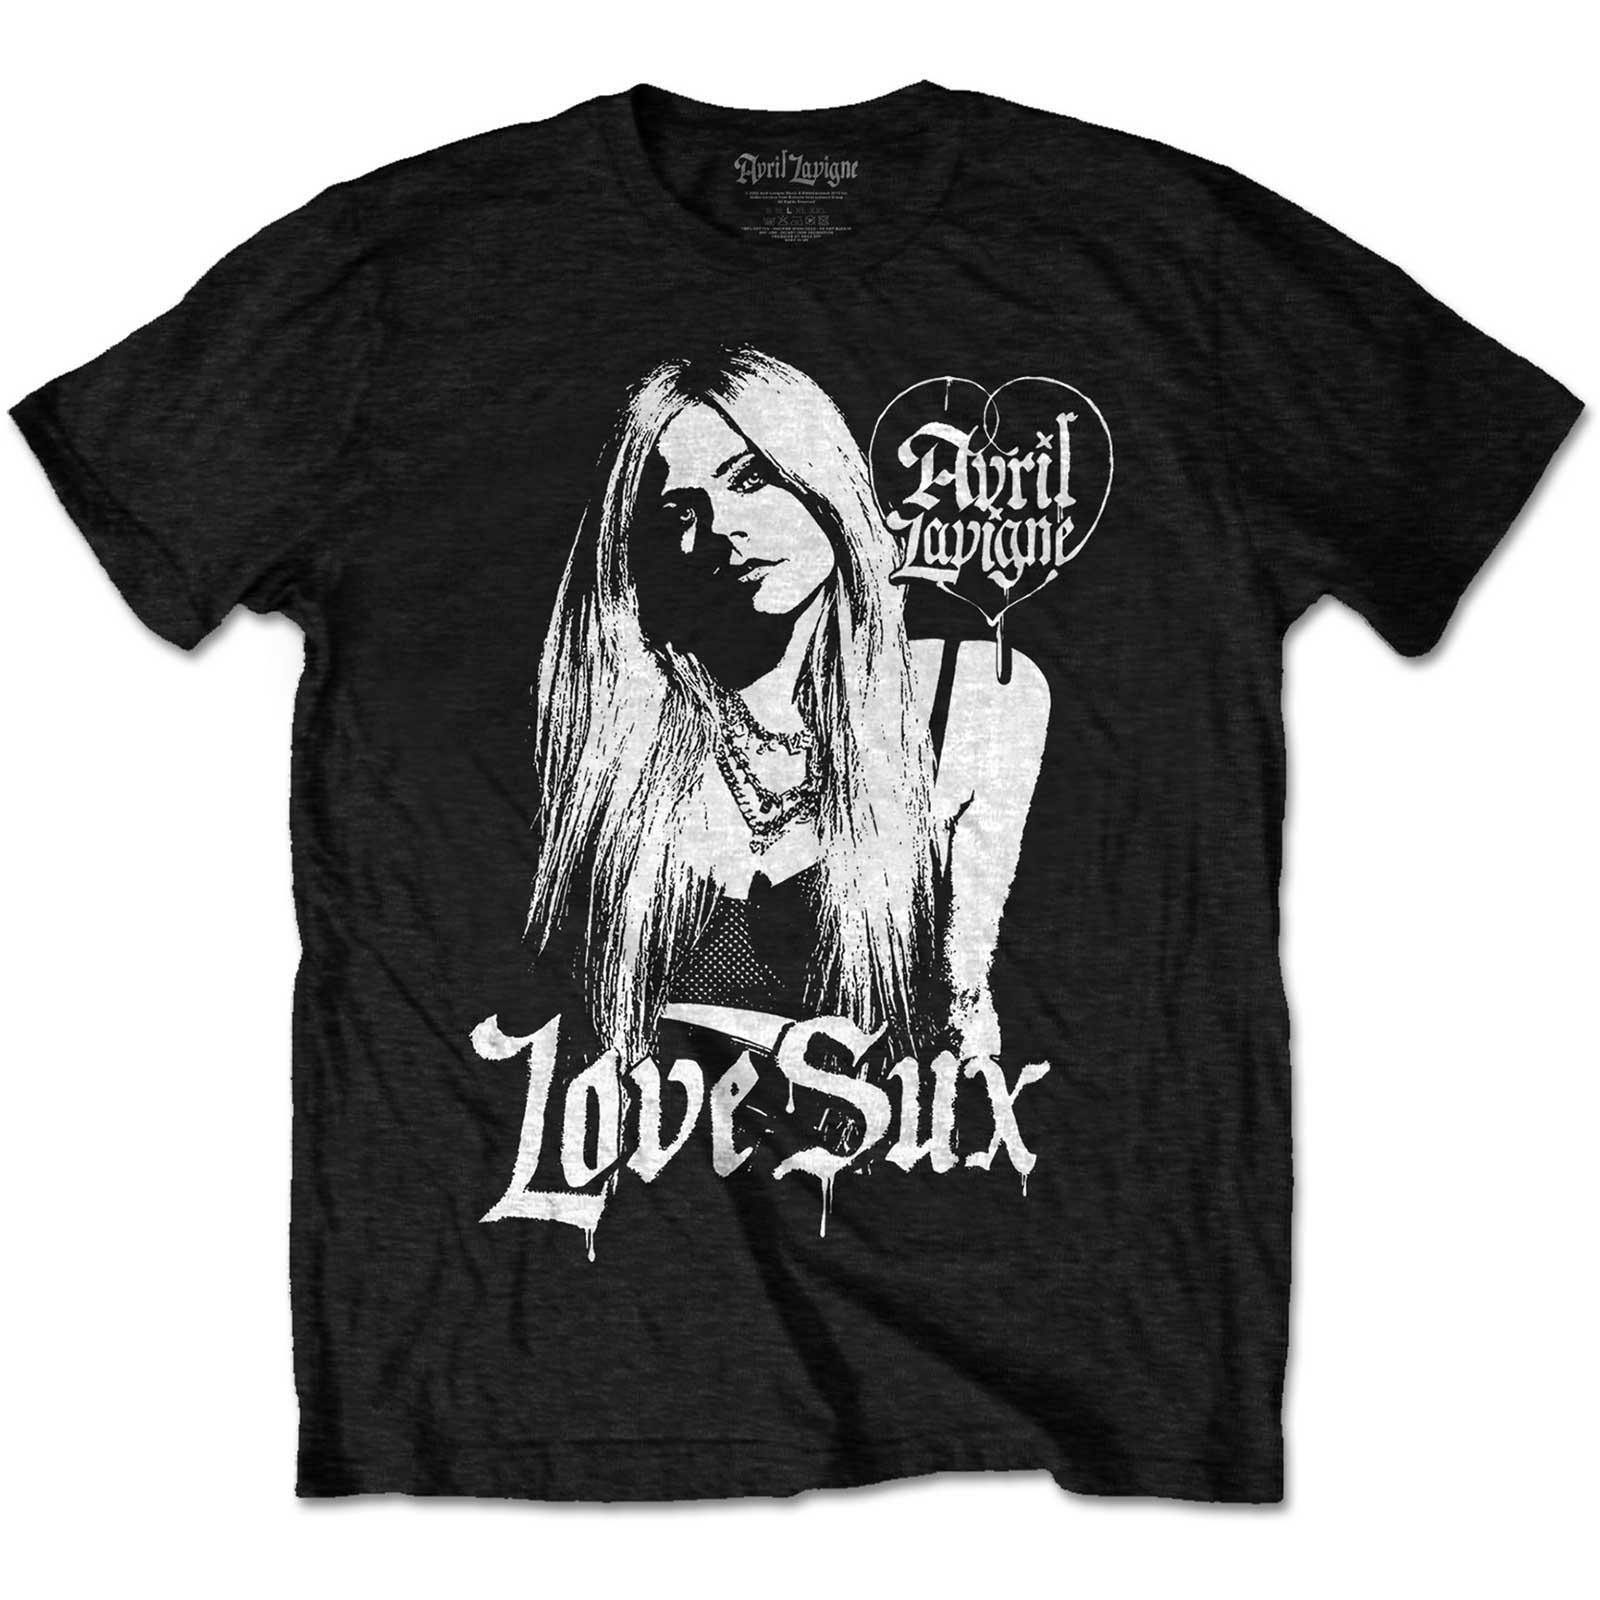 Avril Lavigne Unisex Adult Love Sux Cotton T-Shirt (Black) (M)